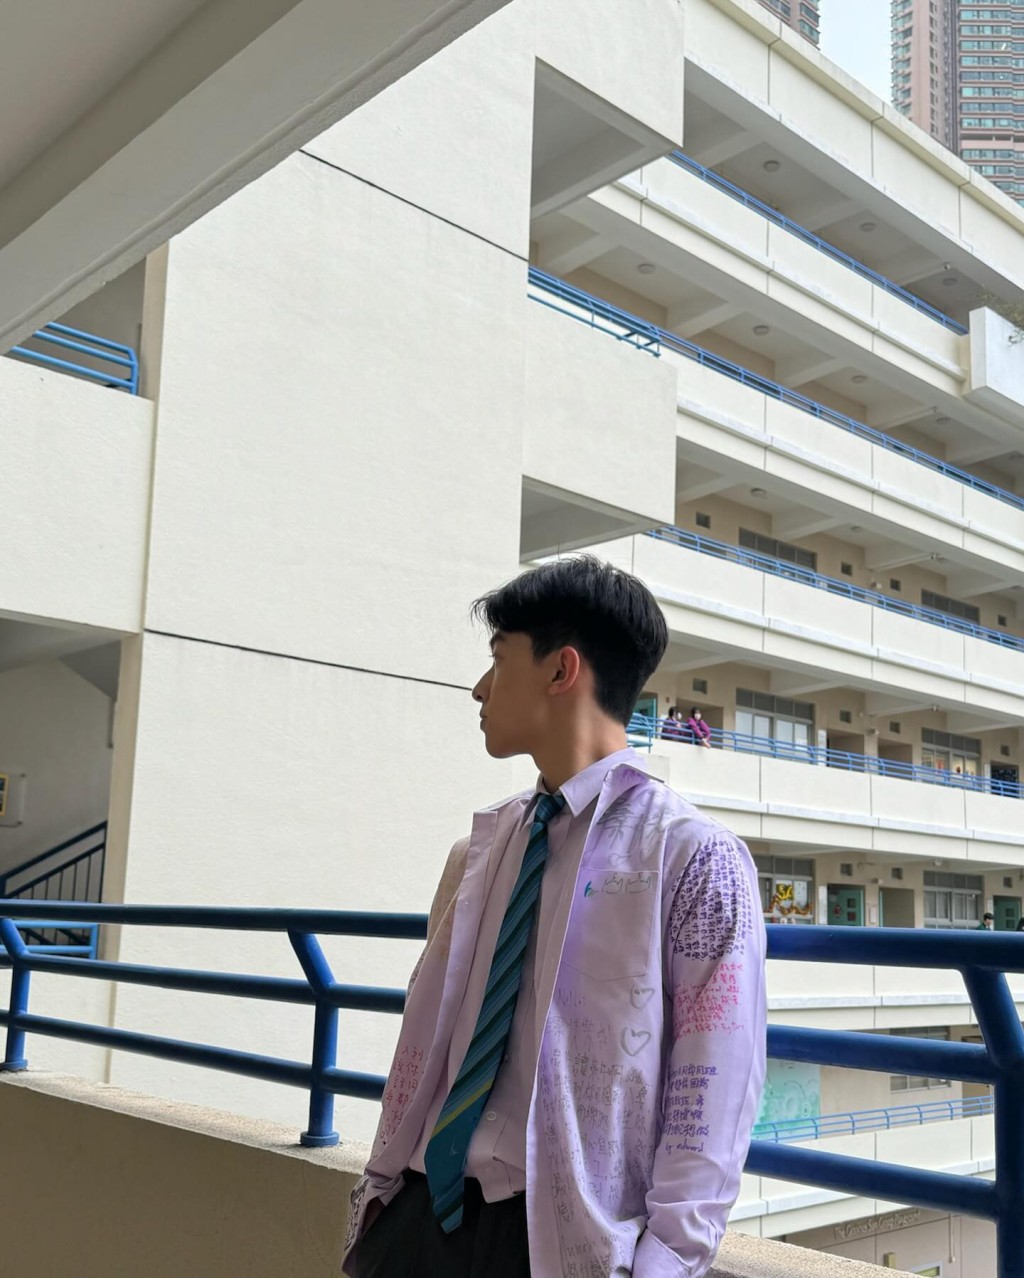 楊凱博近日在IG分享三張校園生活照，可見其校服寫滿同學仔留言字句。